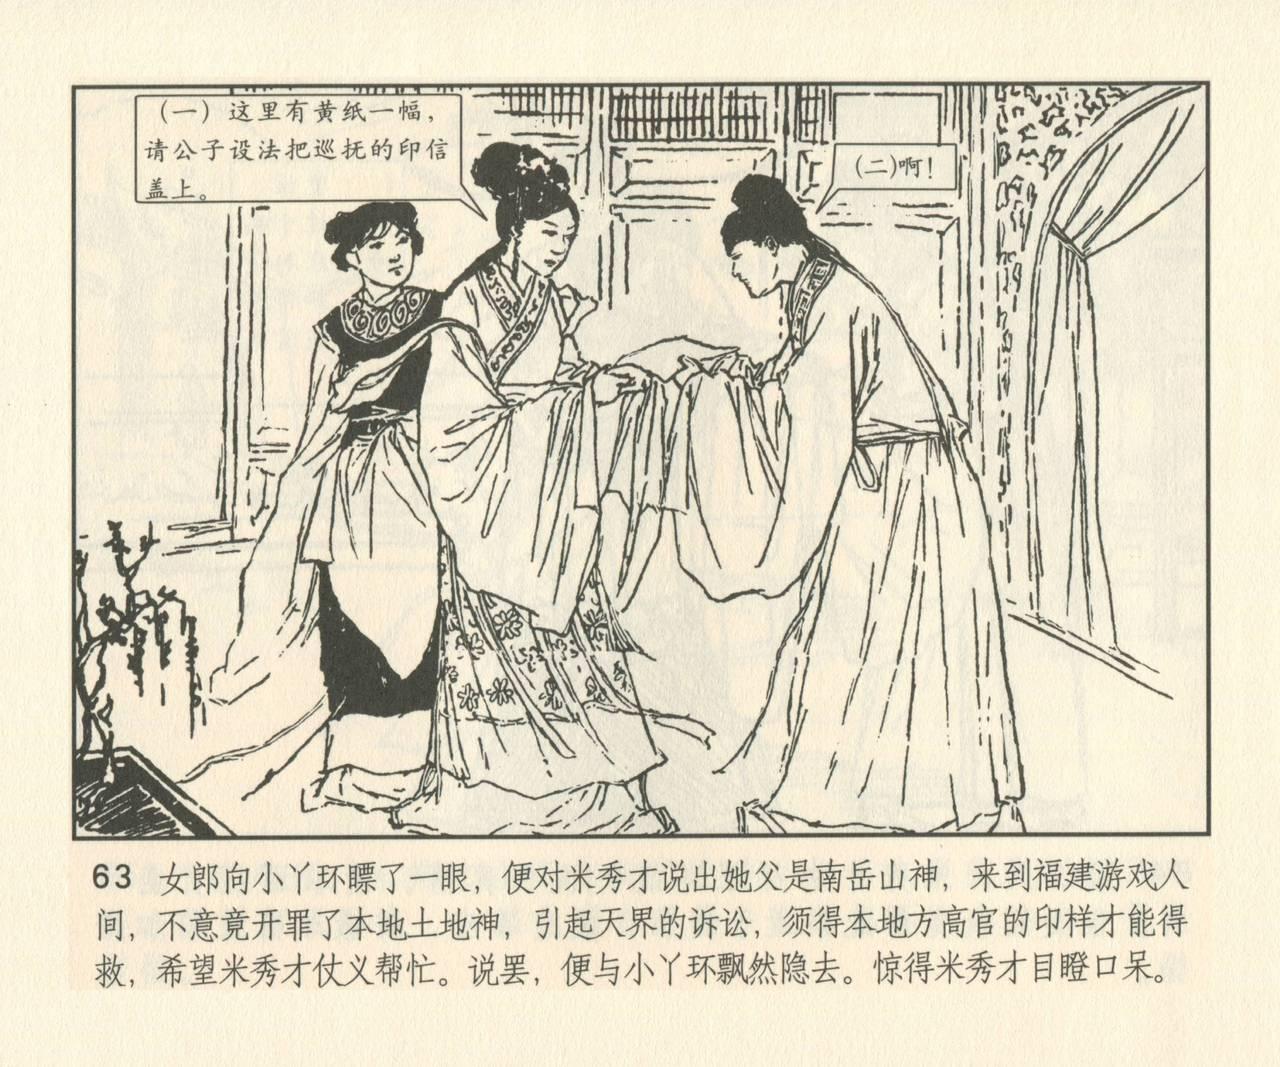 聊斋志异 张玮等绘 天津人民美术出版社 卷二十一 ~ 三十 191